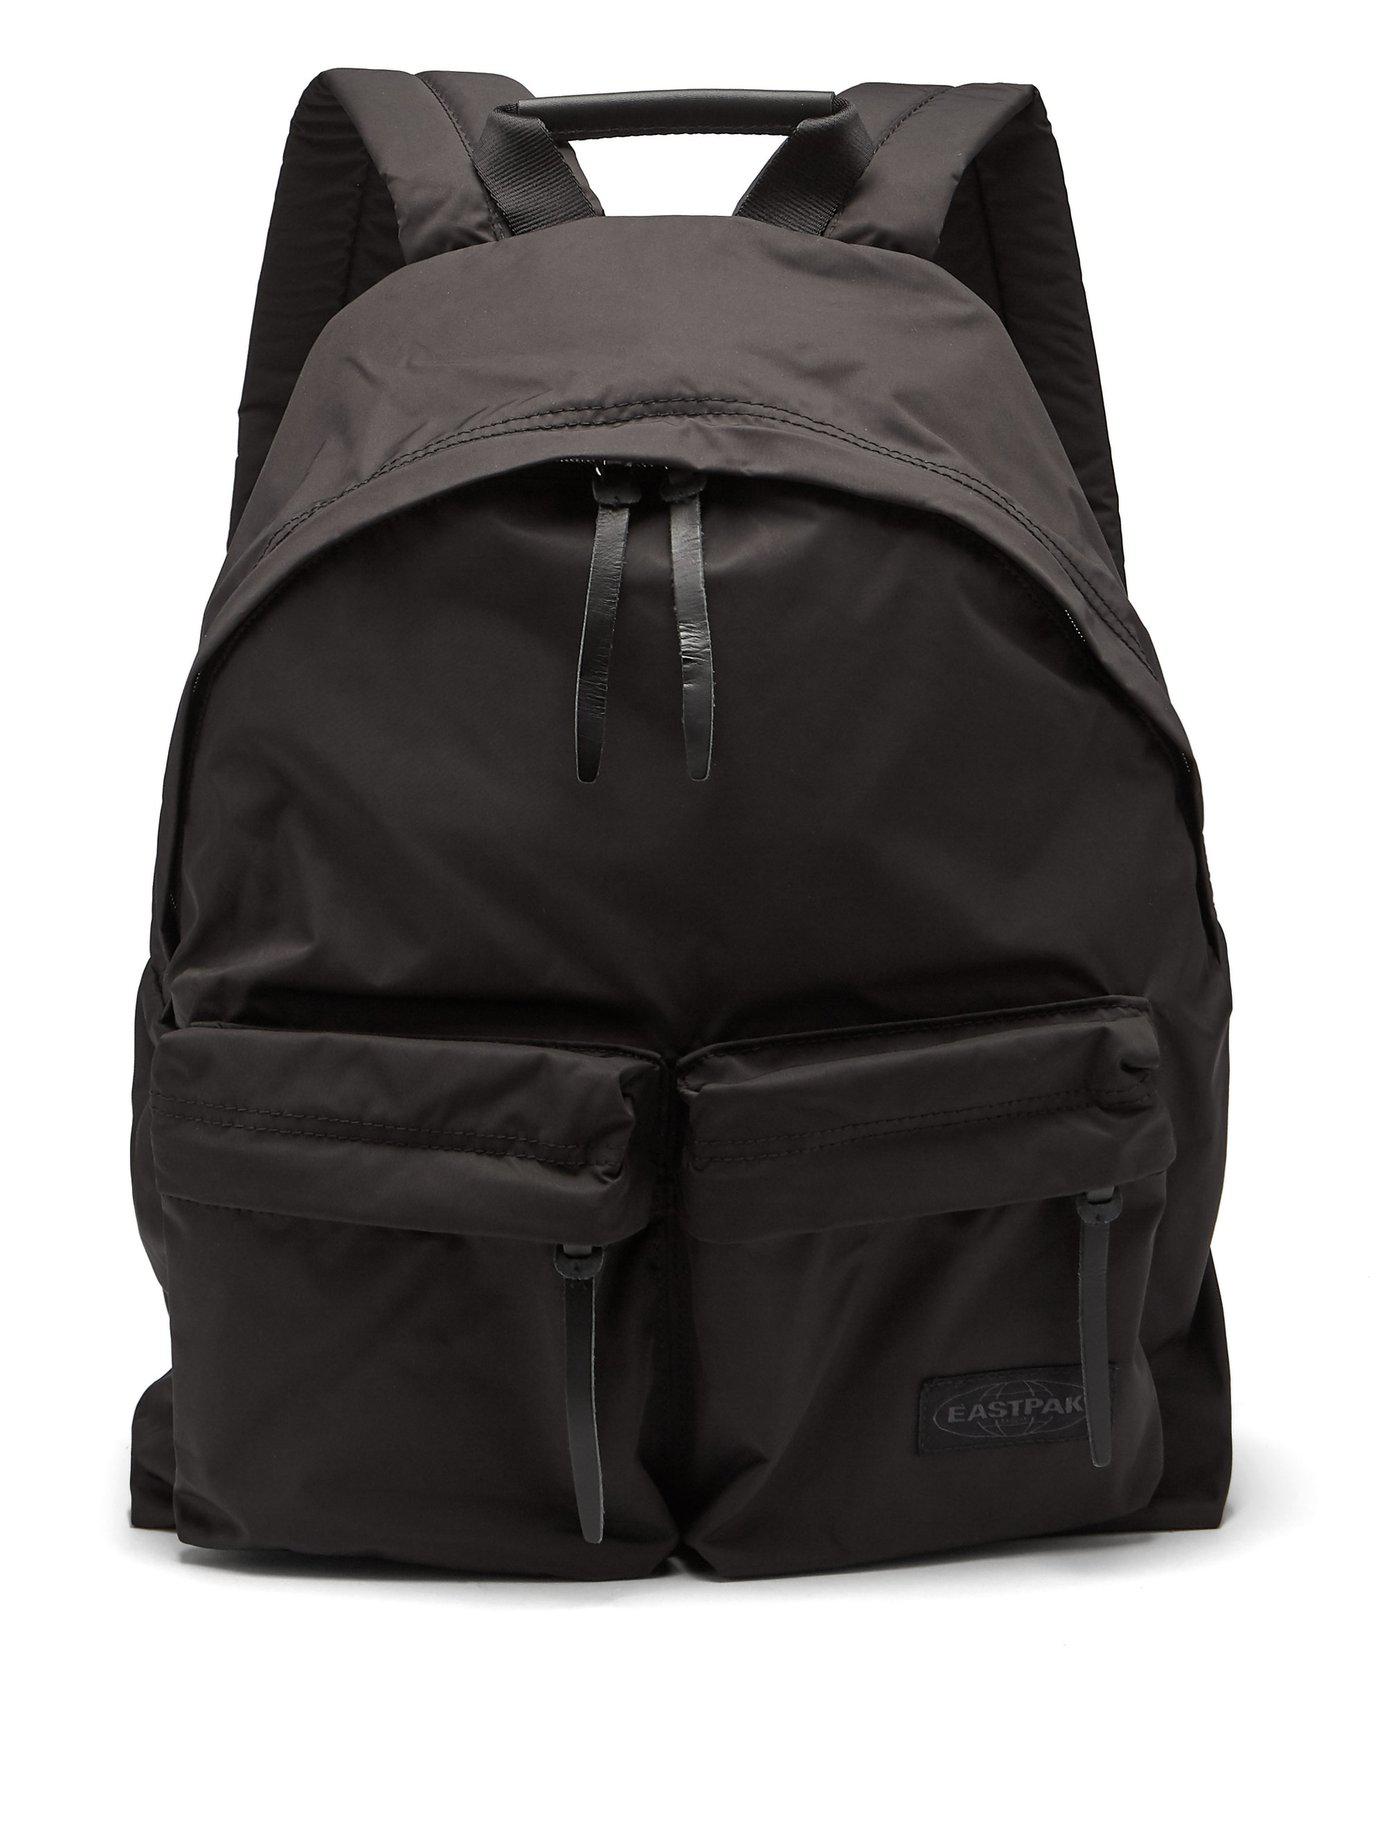 Eastpak Japan Padded Black Backpack for Men - Lyst